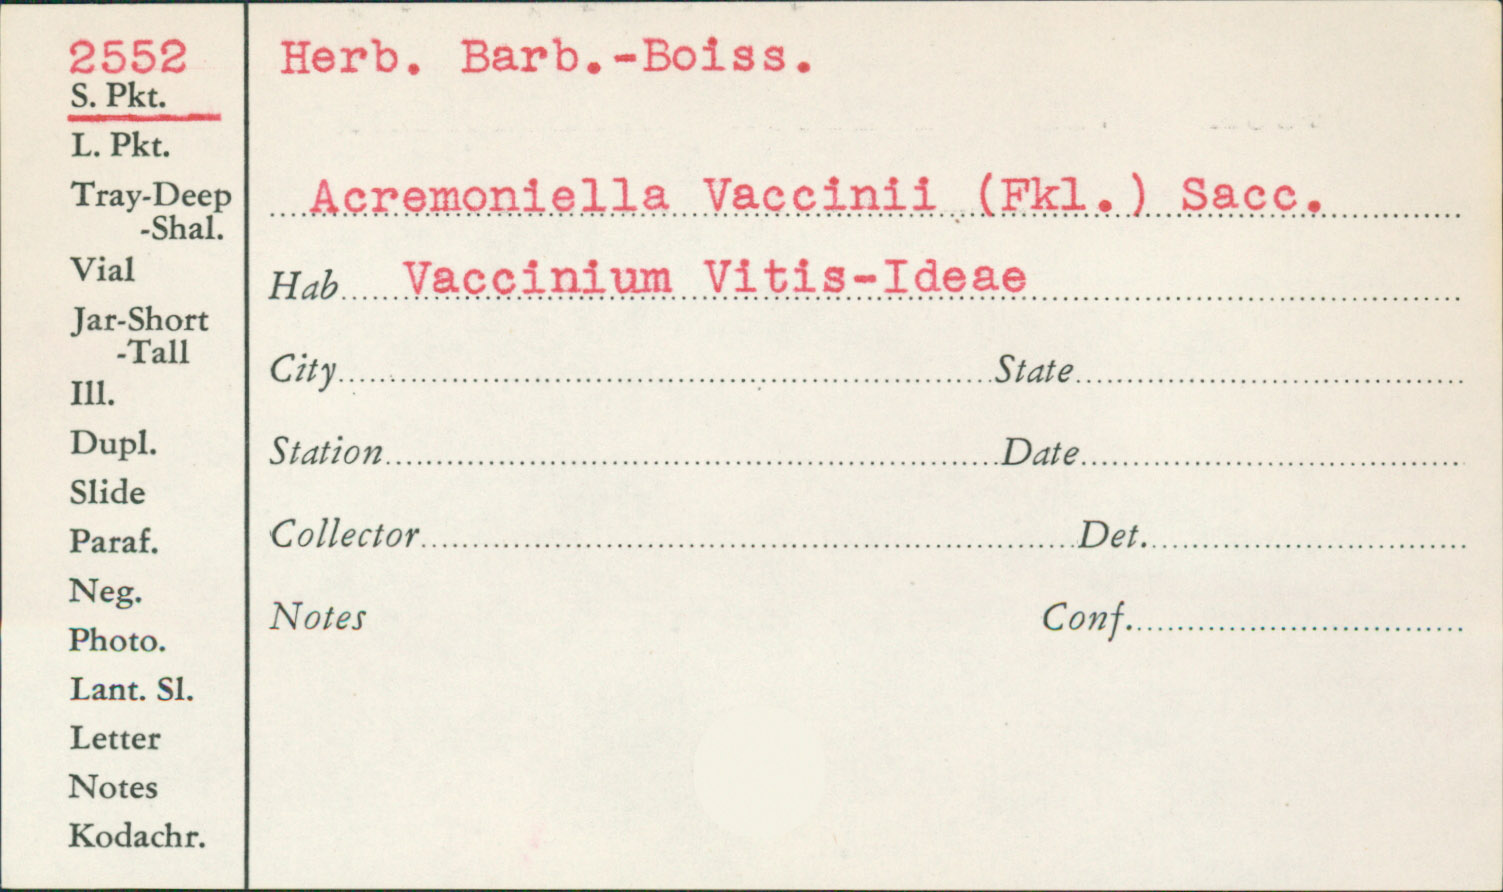 Acremoniella vaccinii image